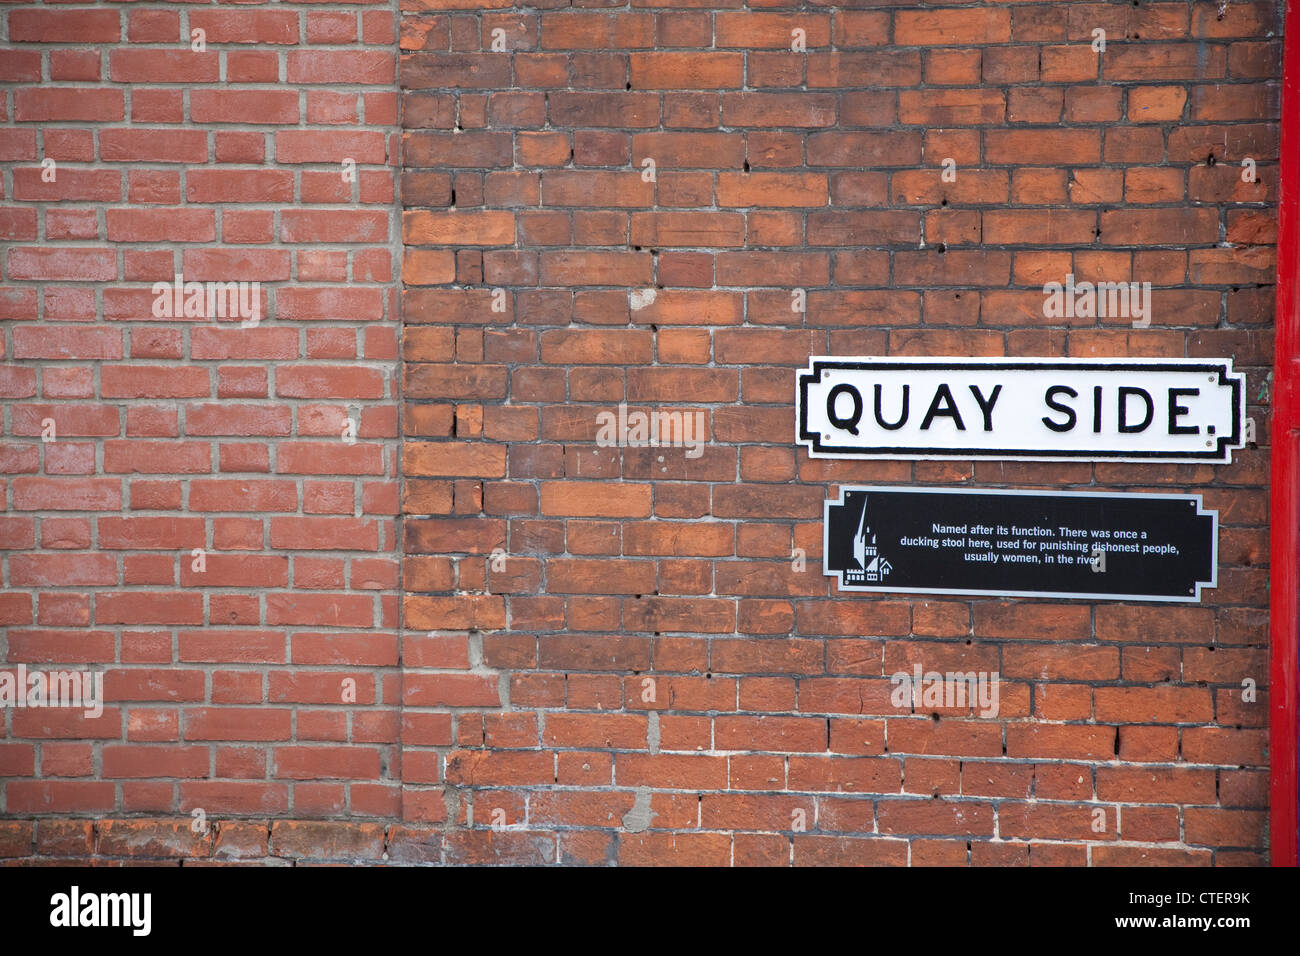 Côté Quay Street sign sur mur de brique rouge Banque D'Images